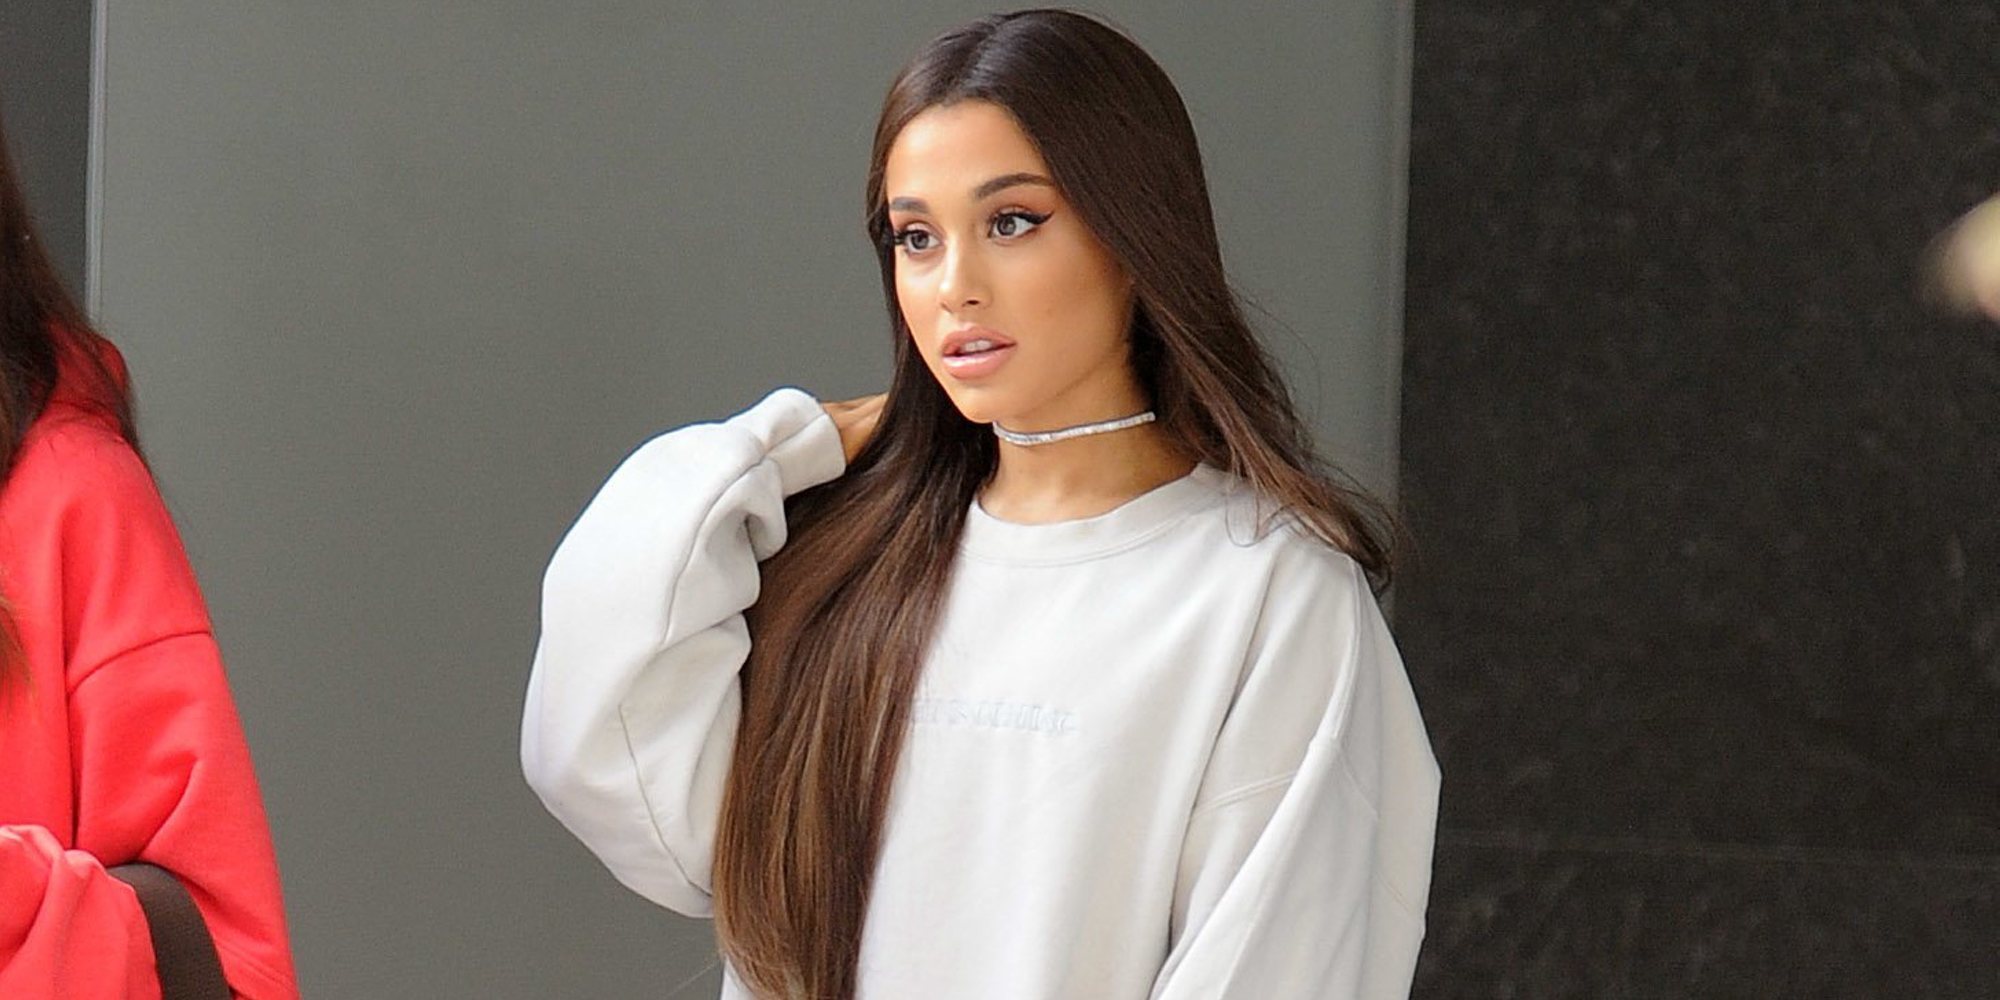 Ariana Grande volverá a actuar en Manchester en solitario dos años después del atentado terrorista